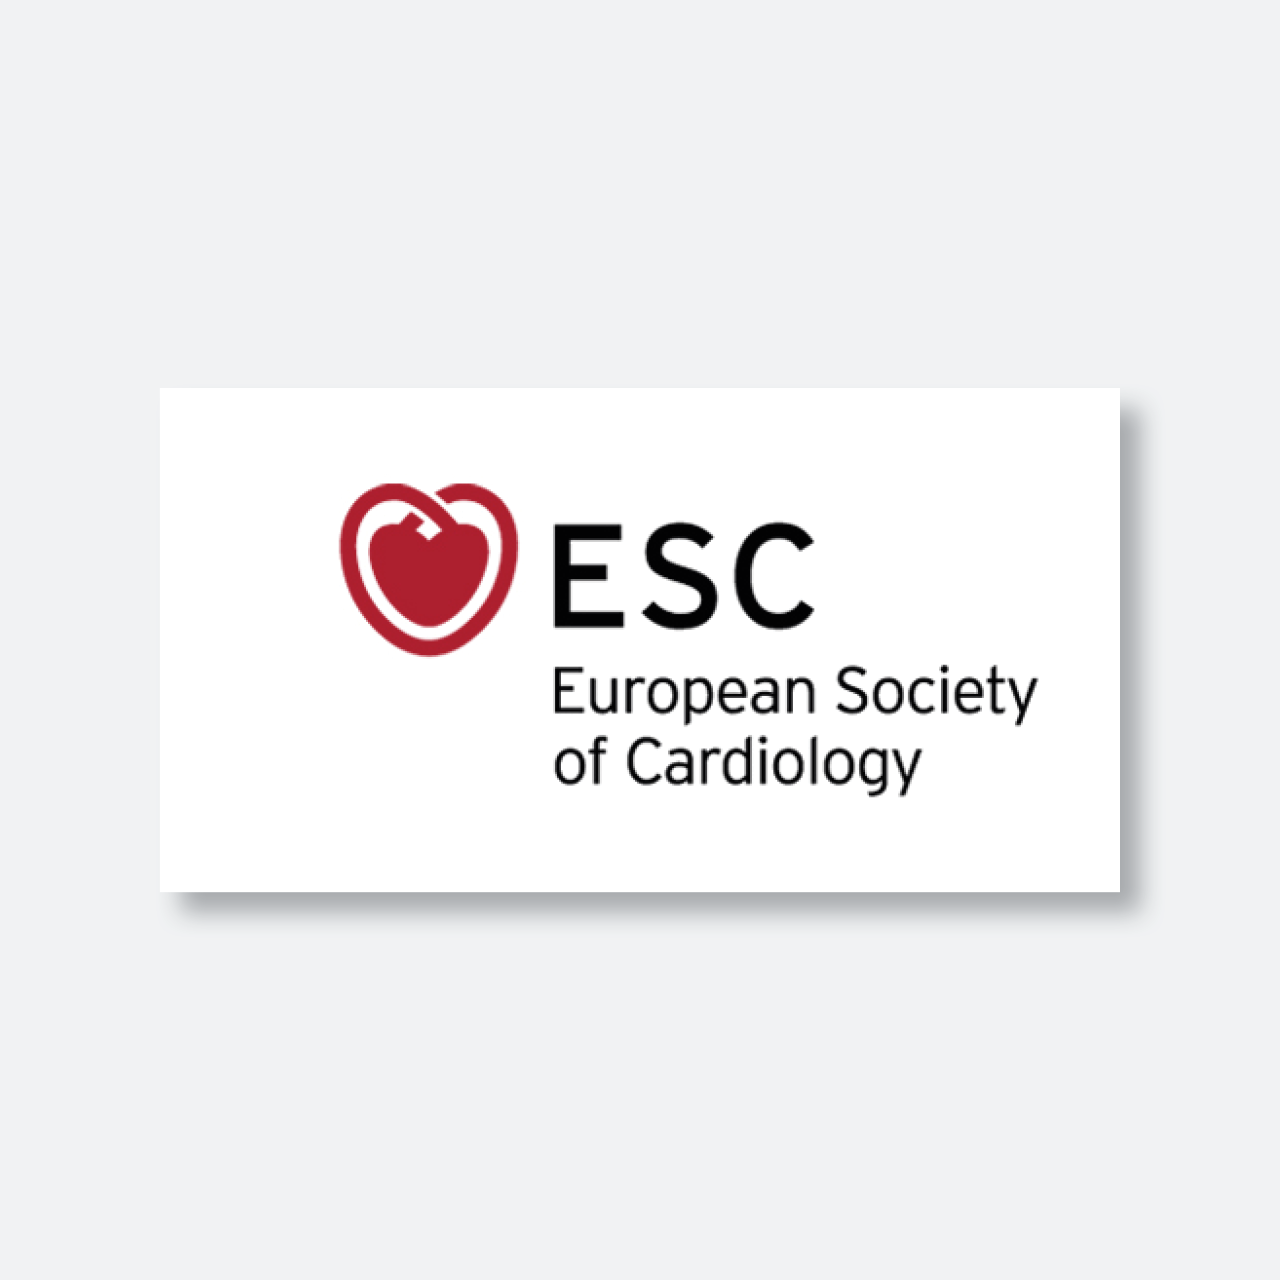 European society. Европейское сообщество кардиологов. Европейское кардиологическое общество. European Society of Cardiology logo. Эмблема европейского общества кардиологов.